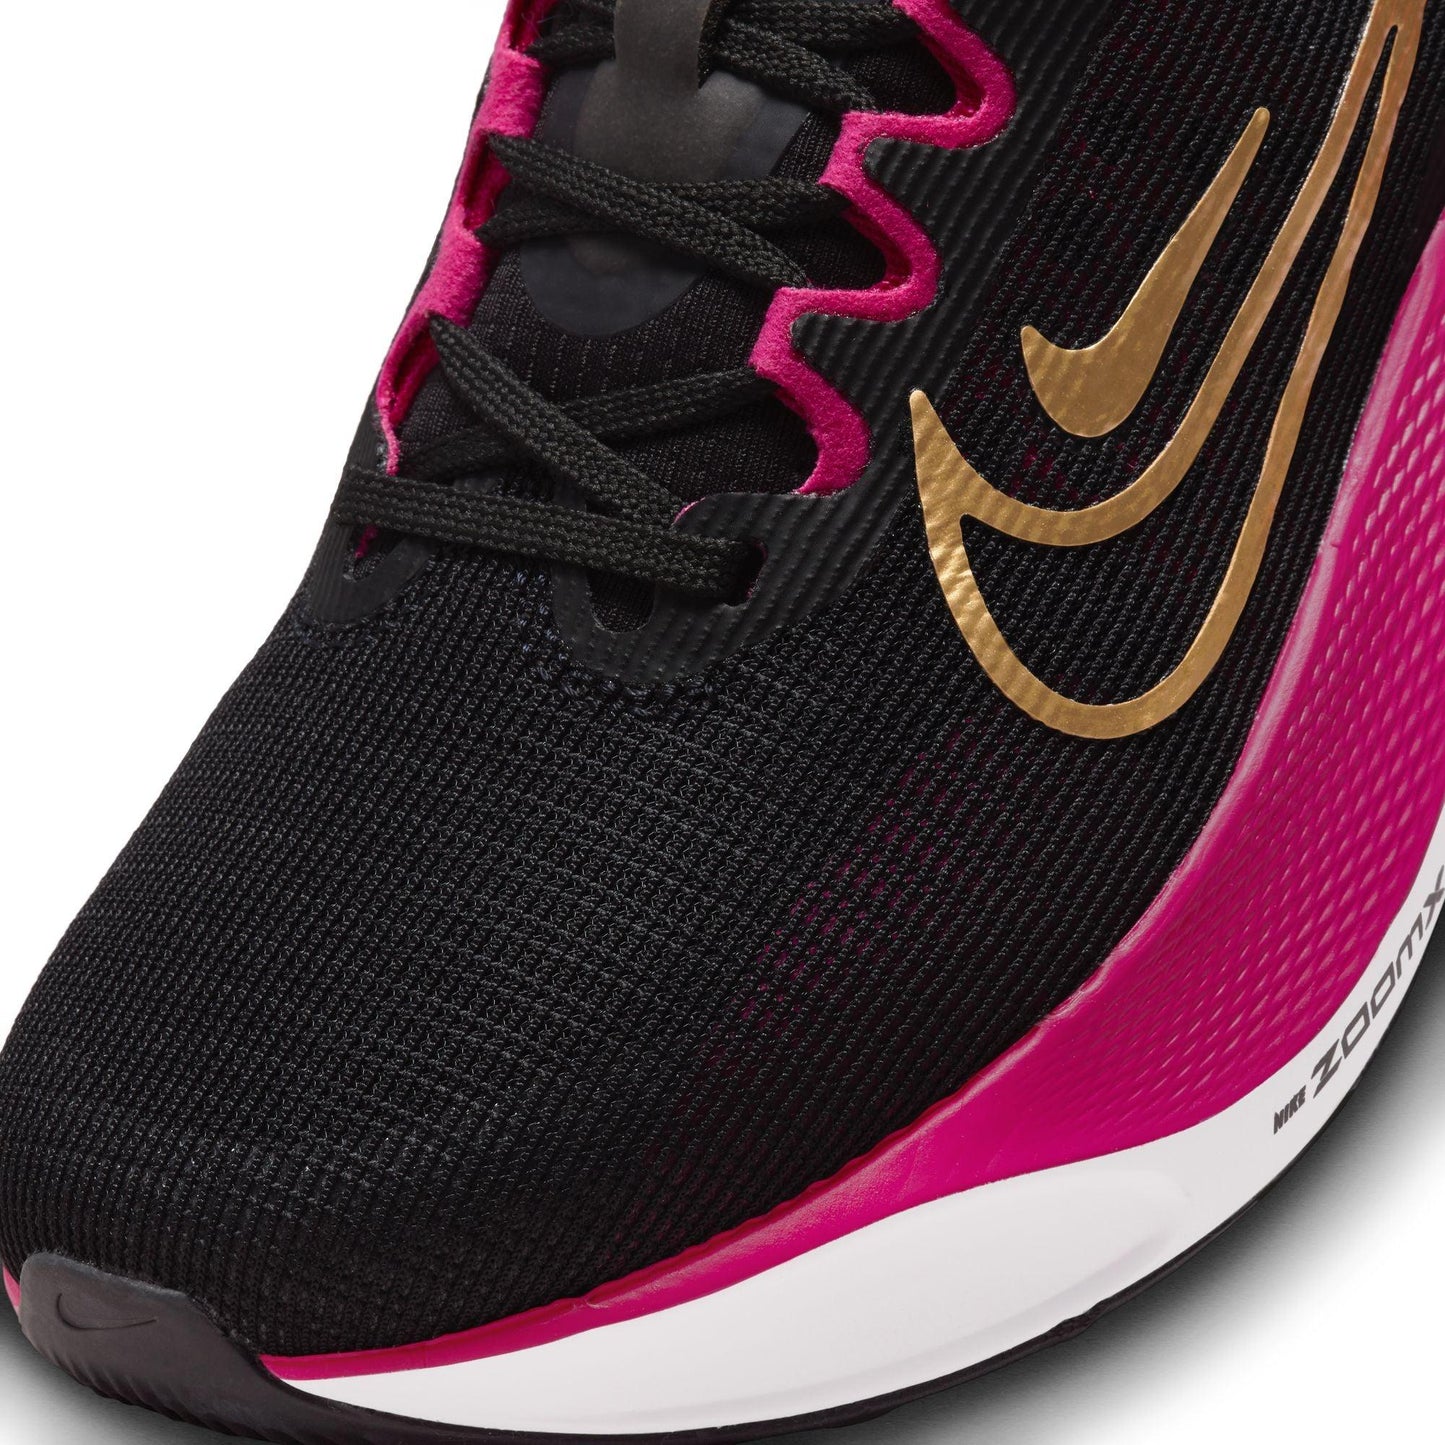 Nike Zoom Fly 5 Women's - The Sweat Shop